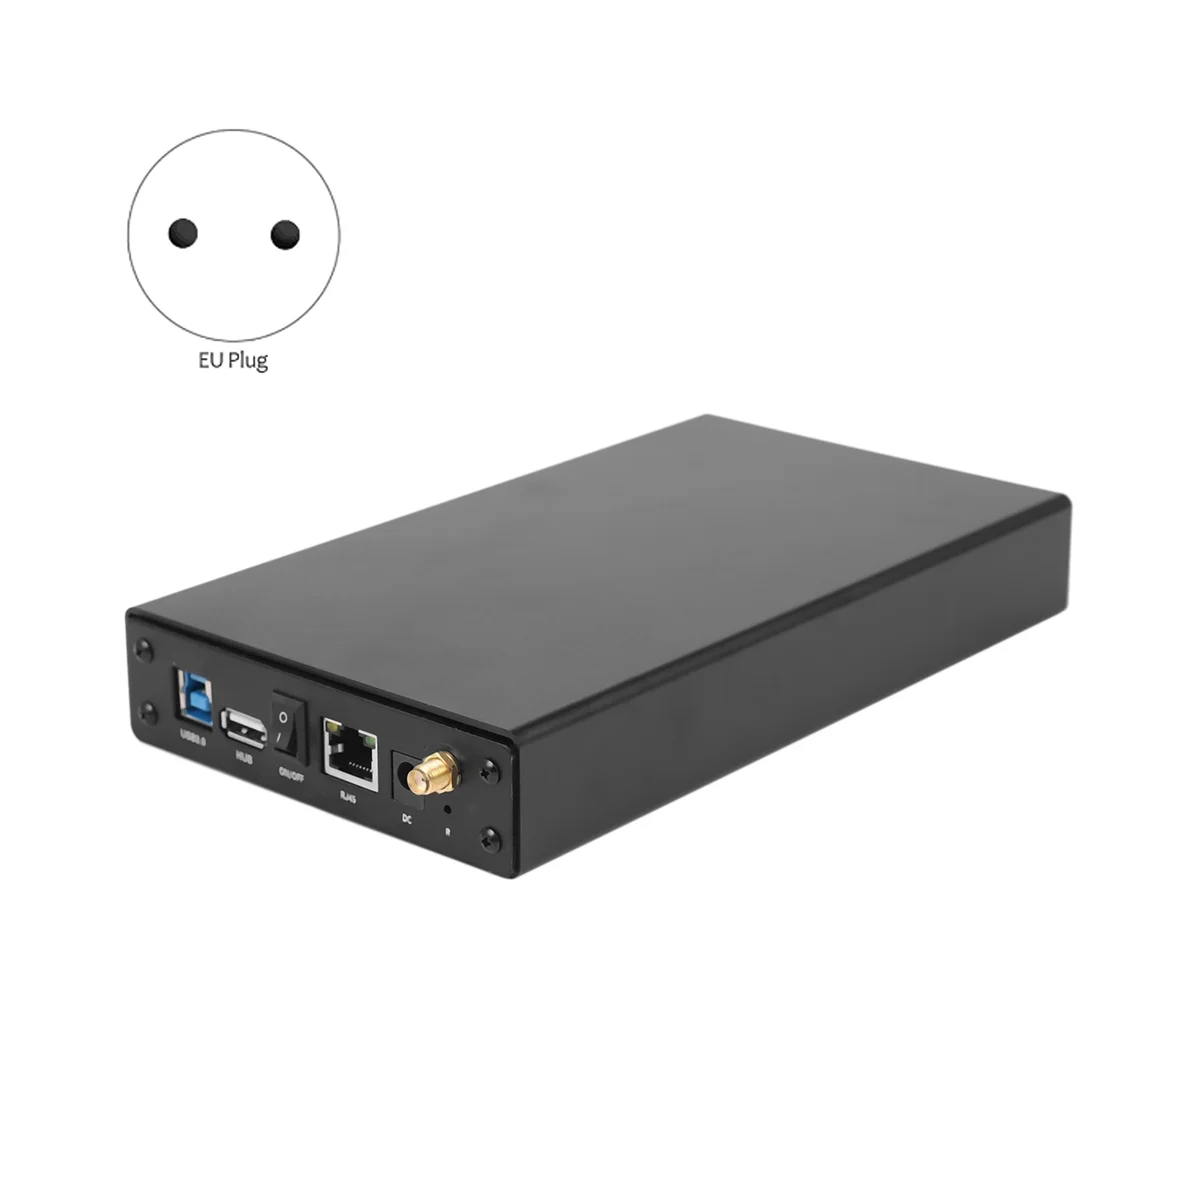 Корпус внешнего жесткого диска Rj45, Nas, антенна Wi-Fi, беспроводной интерфейс жесткого диска Sata USB 3.0, интерфейс Wi-Fi, коробка жесткого диска, жесткий диск 3.5-Caddy EU Plug